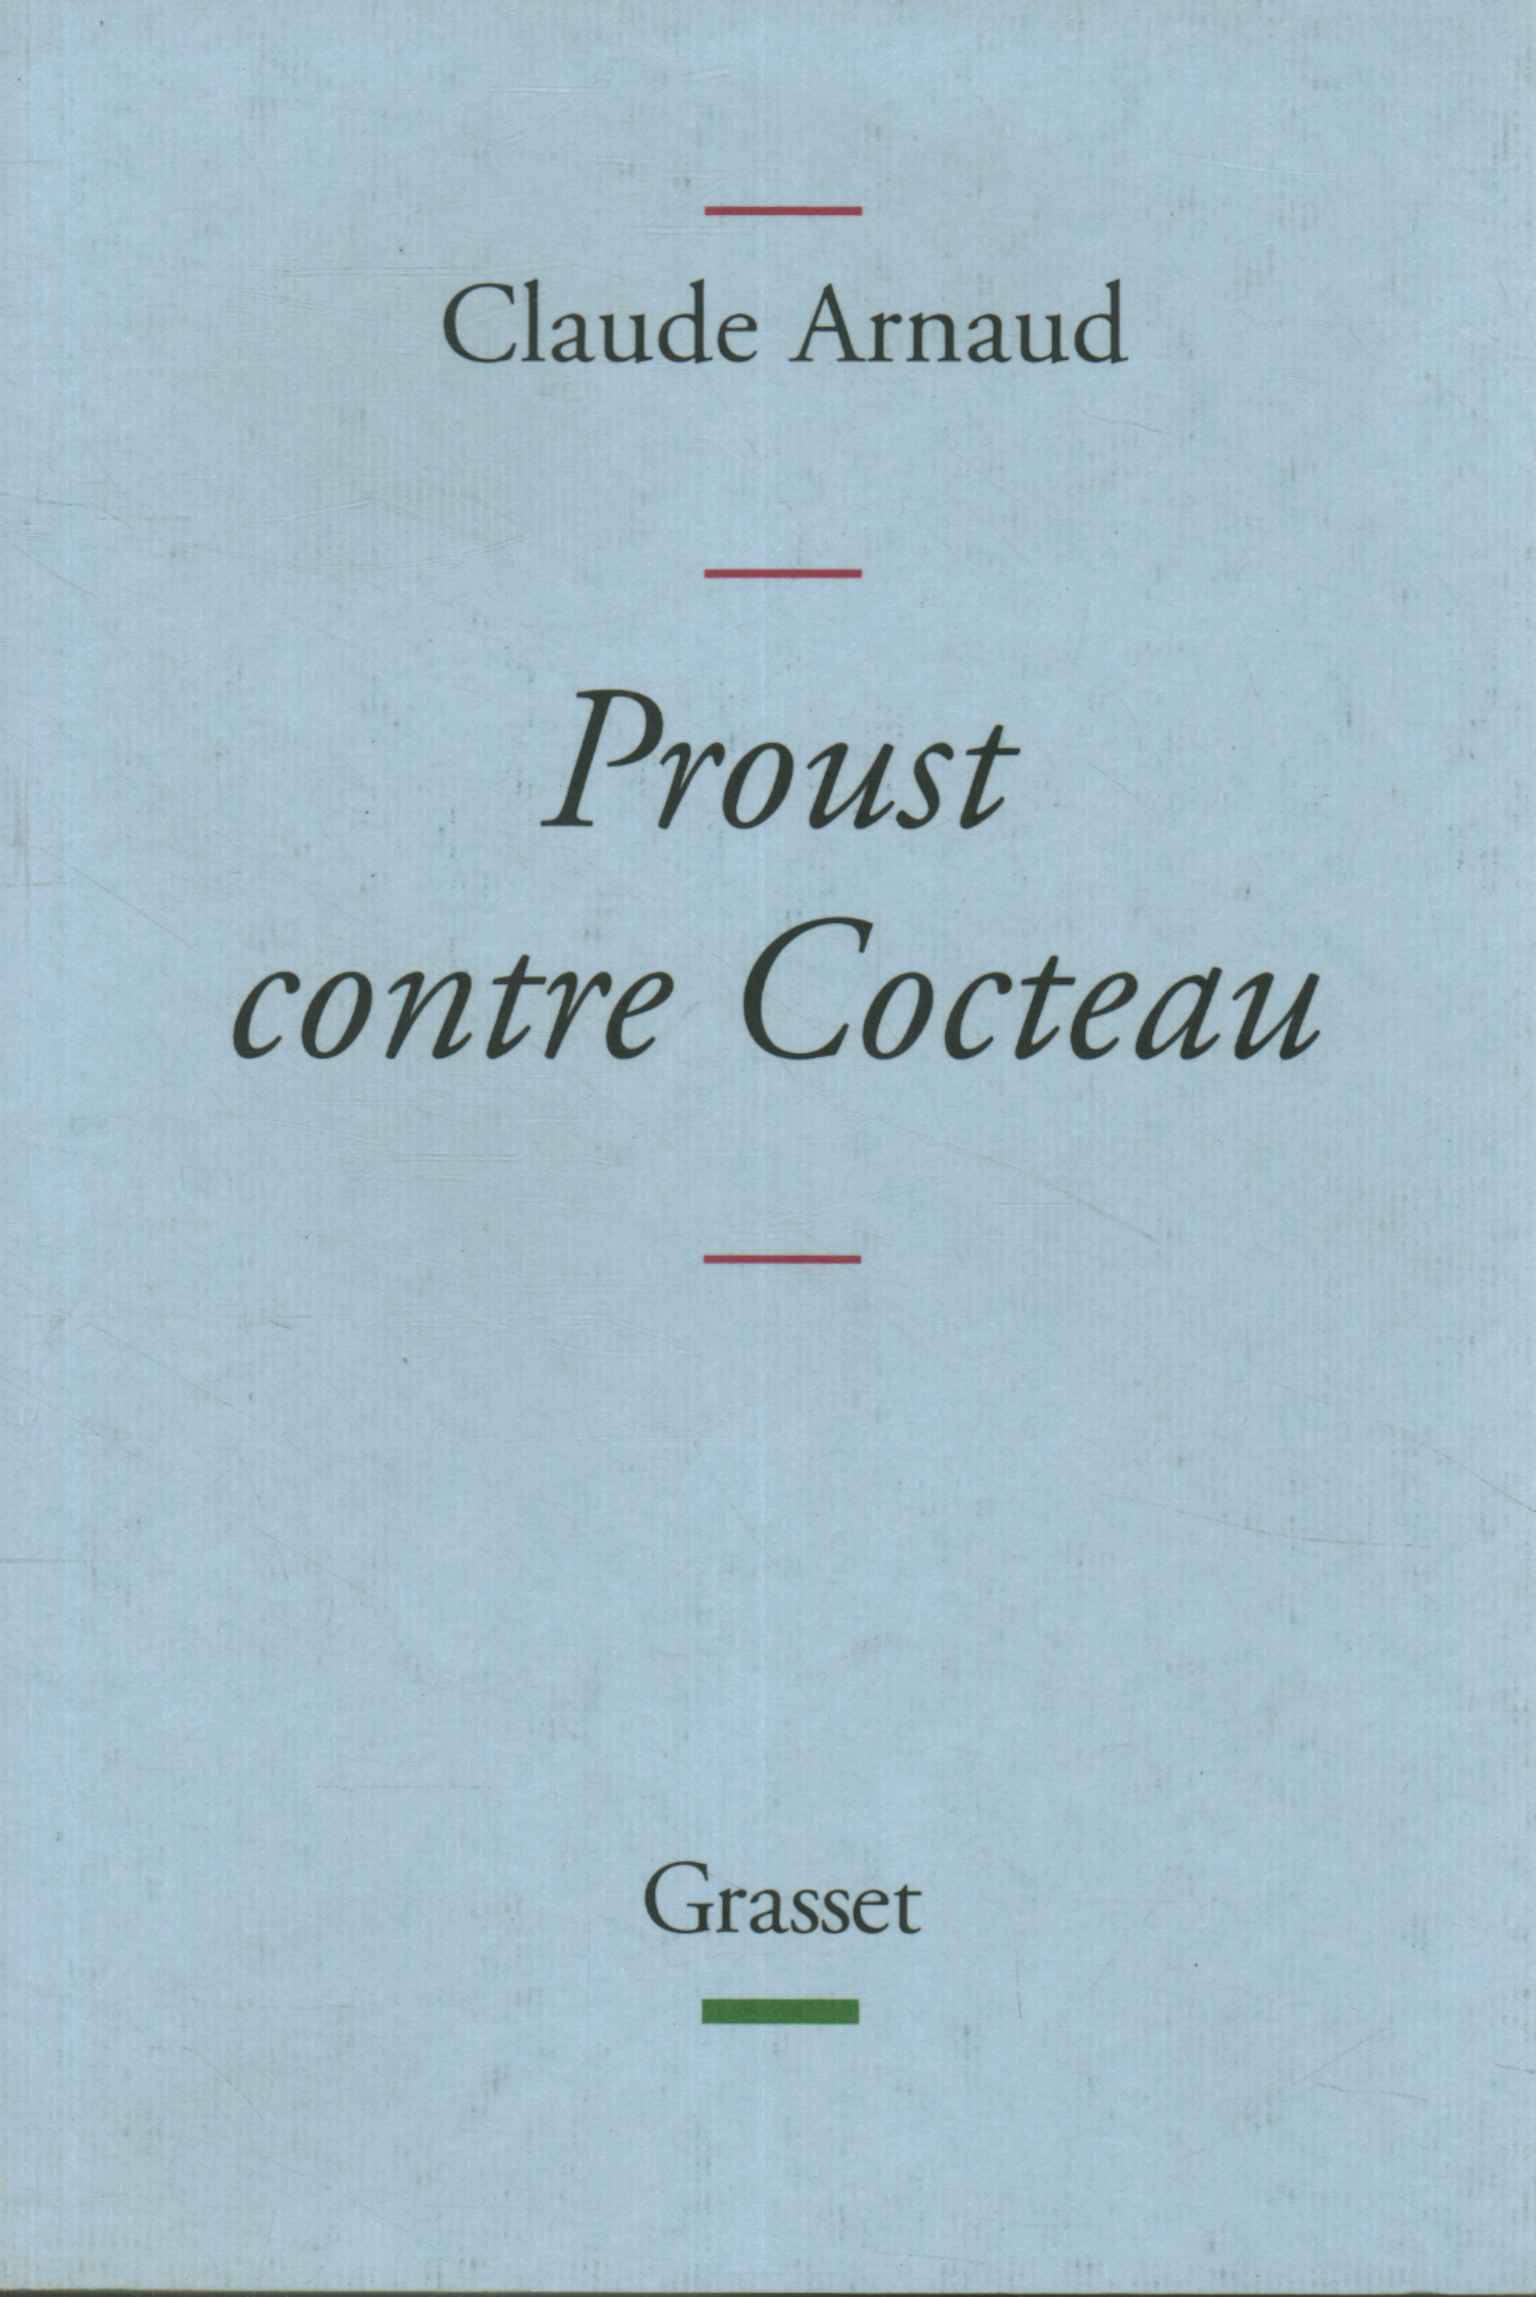 Proust contra Cocteau